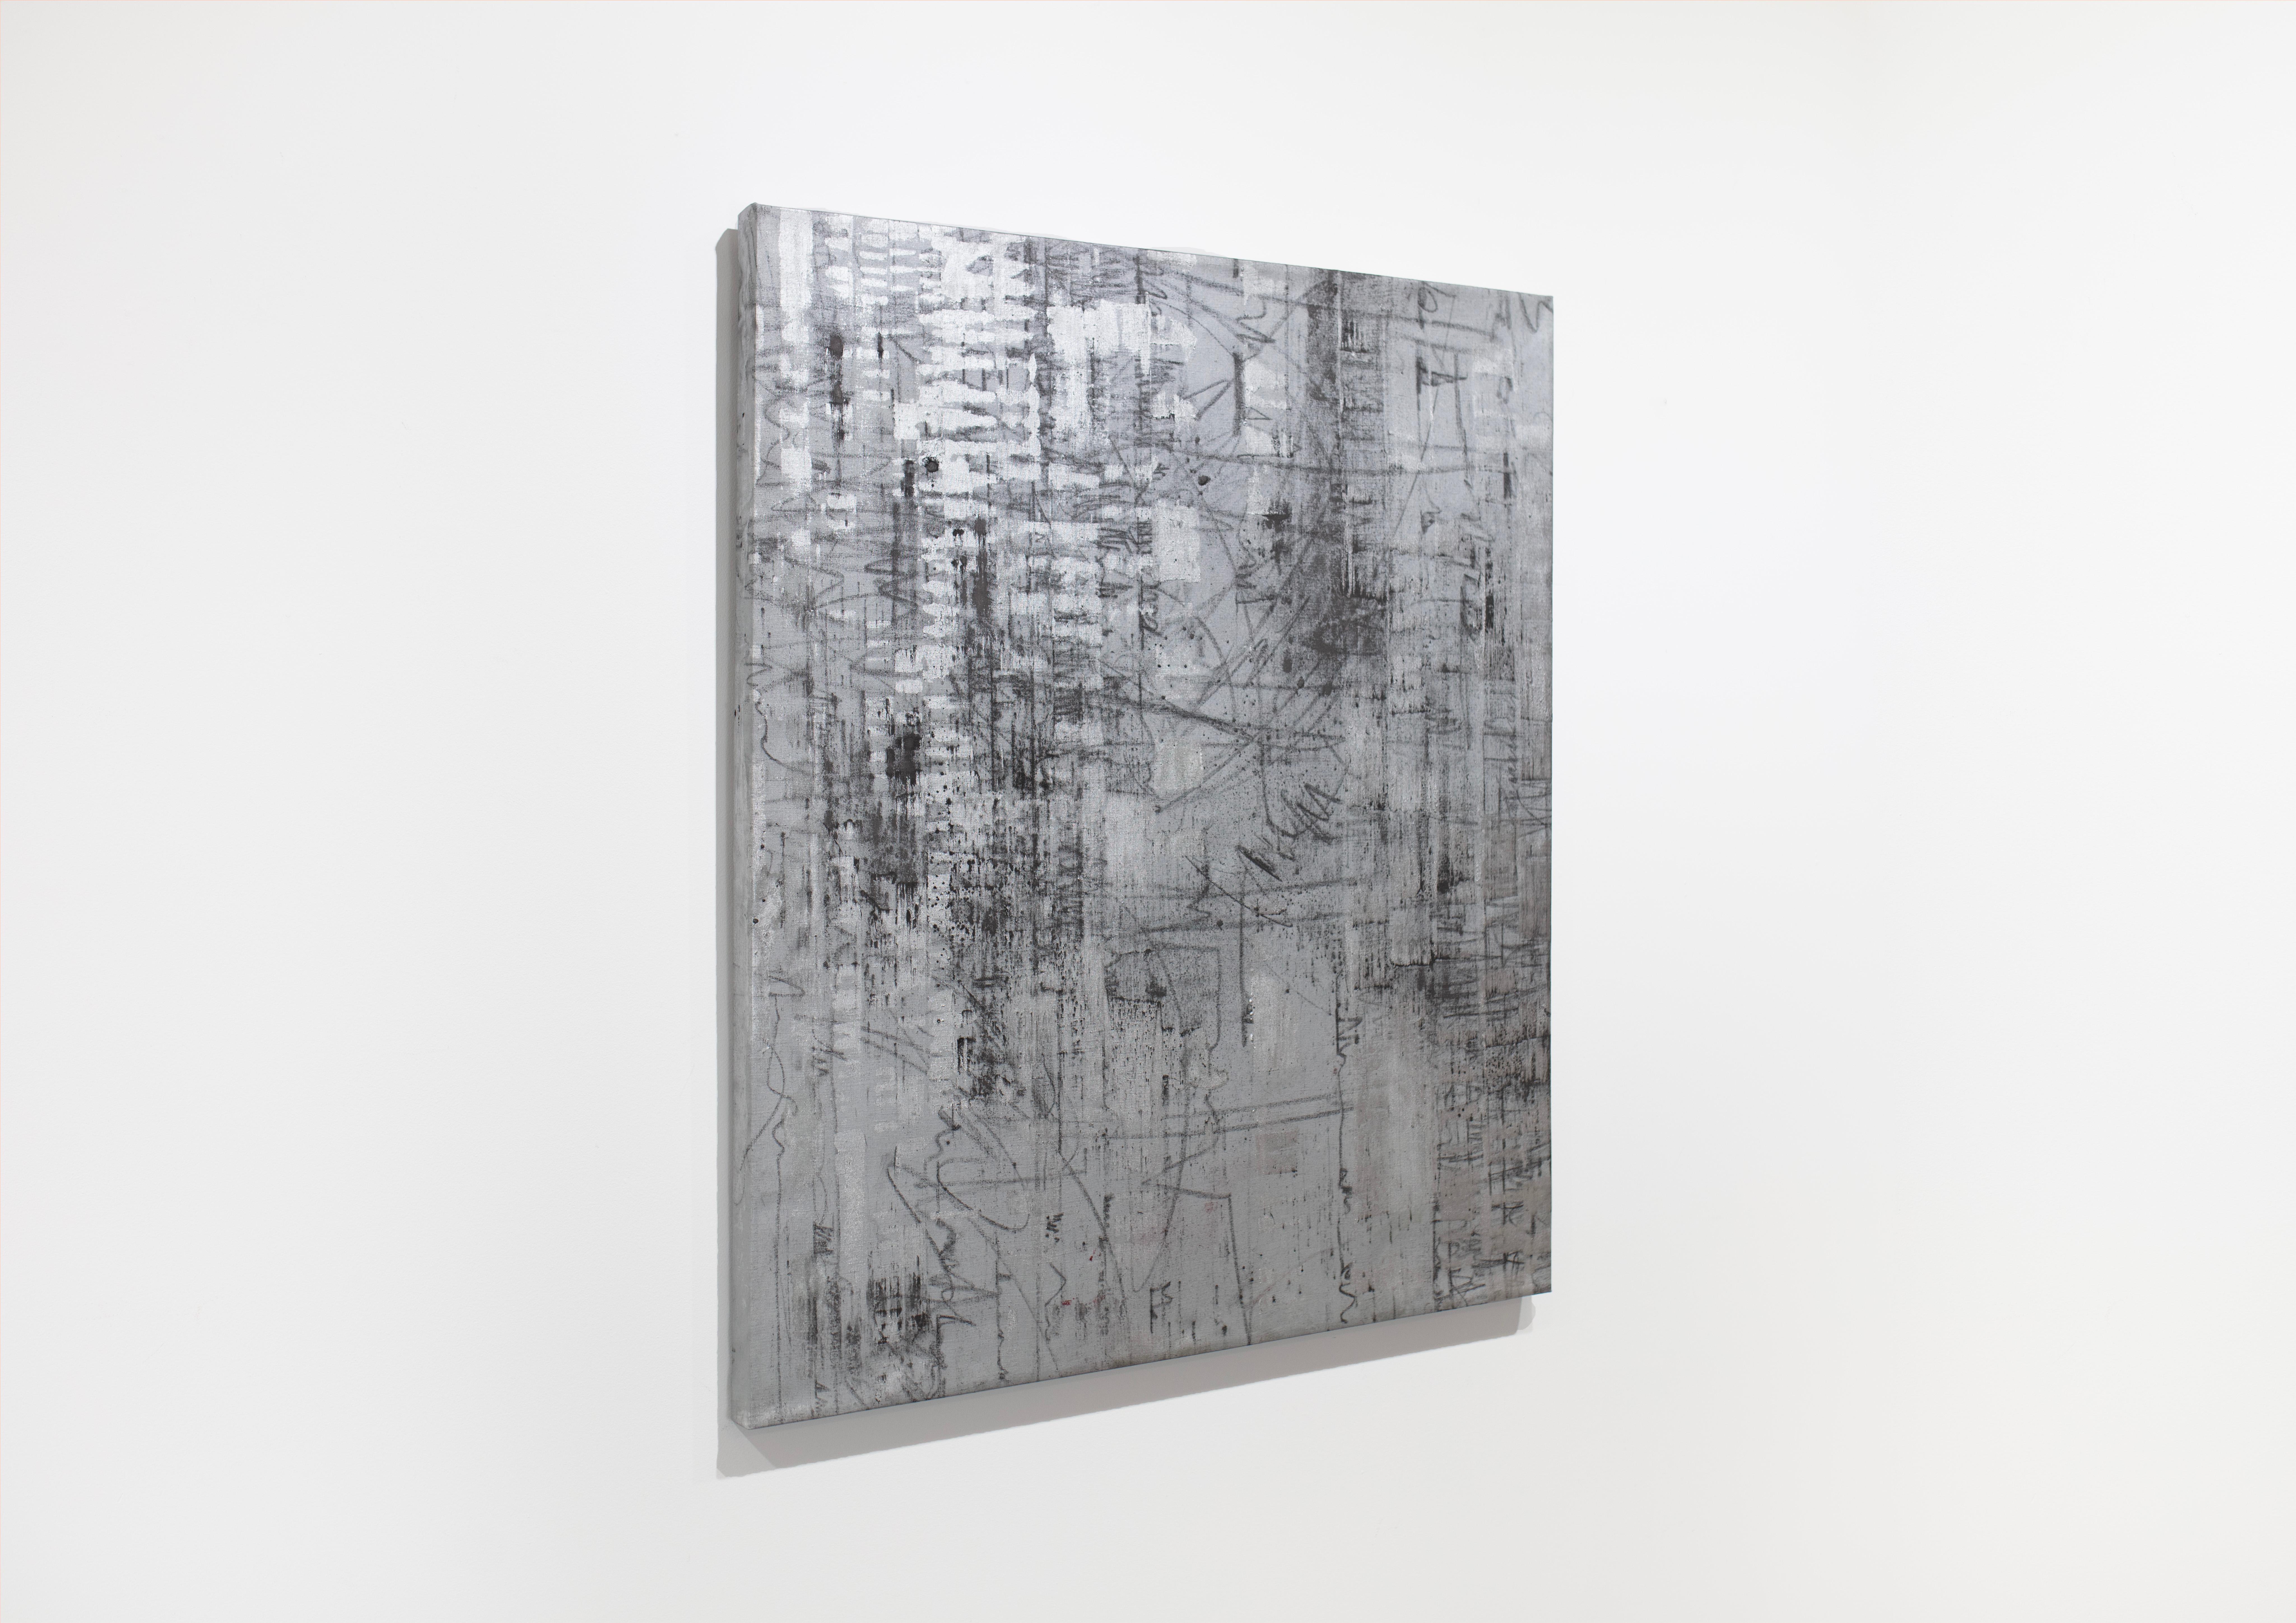 Cette peinture géométrique abstraite de Ned Martin est réalisée à l'huile sur une toile enveloppée et présente une palette de gris anthracite et d'argent métallique. Elle est signée par l'artiste au dos de la toile et est câblée et prête à être